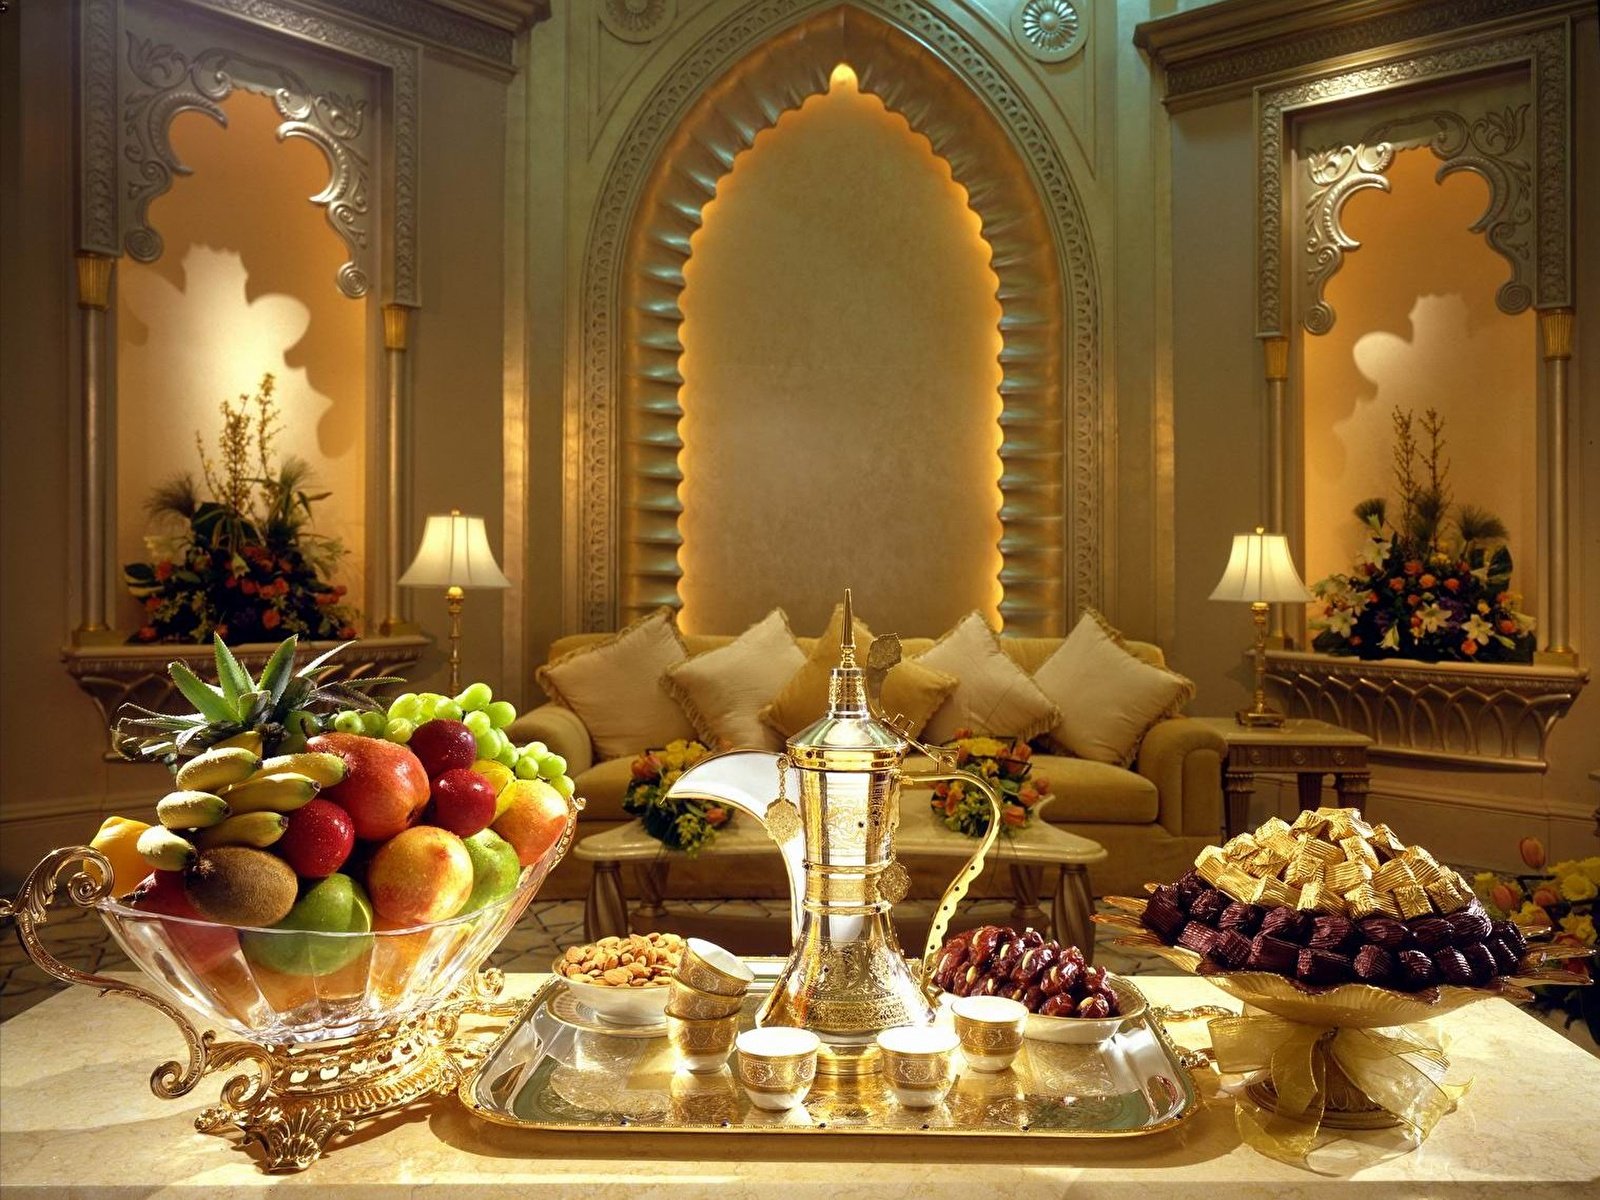 Вечер в арабском стиле. Шикарный стол с едой. Добрый вечер в Восточном стиле. Новый год в арабском стиле.